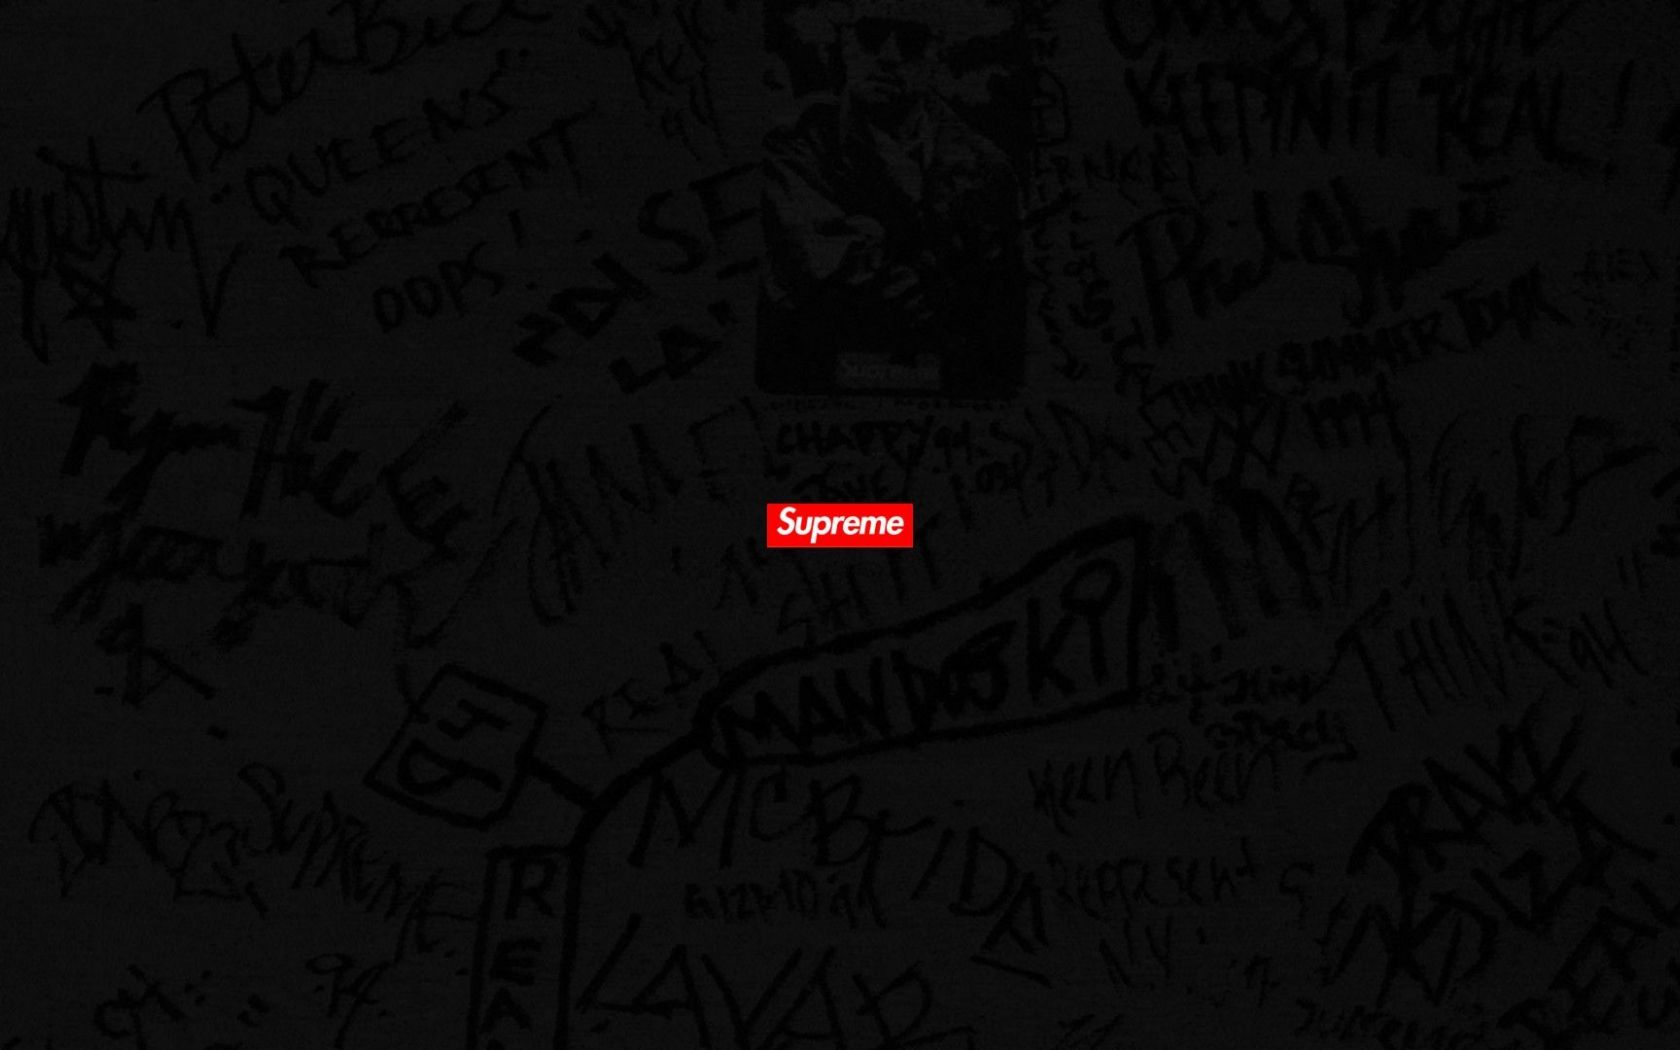 Free download Gucci Supreme Computer Wallpaper Top Gucci Supreme